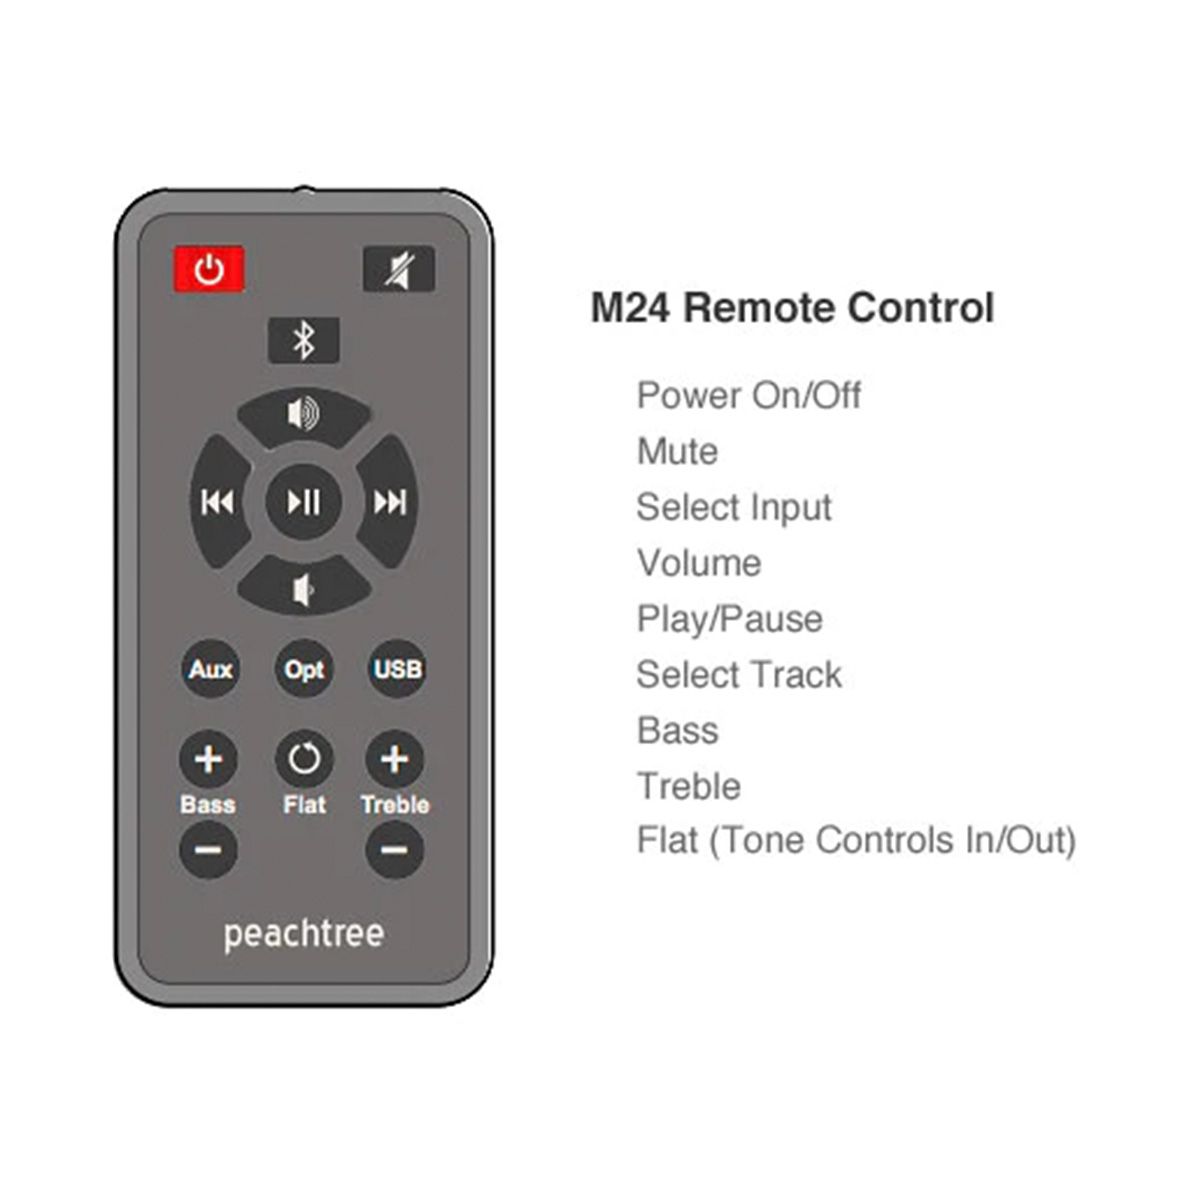 Peachtree M24 remote control graphic and description